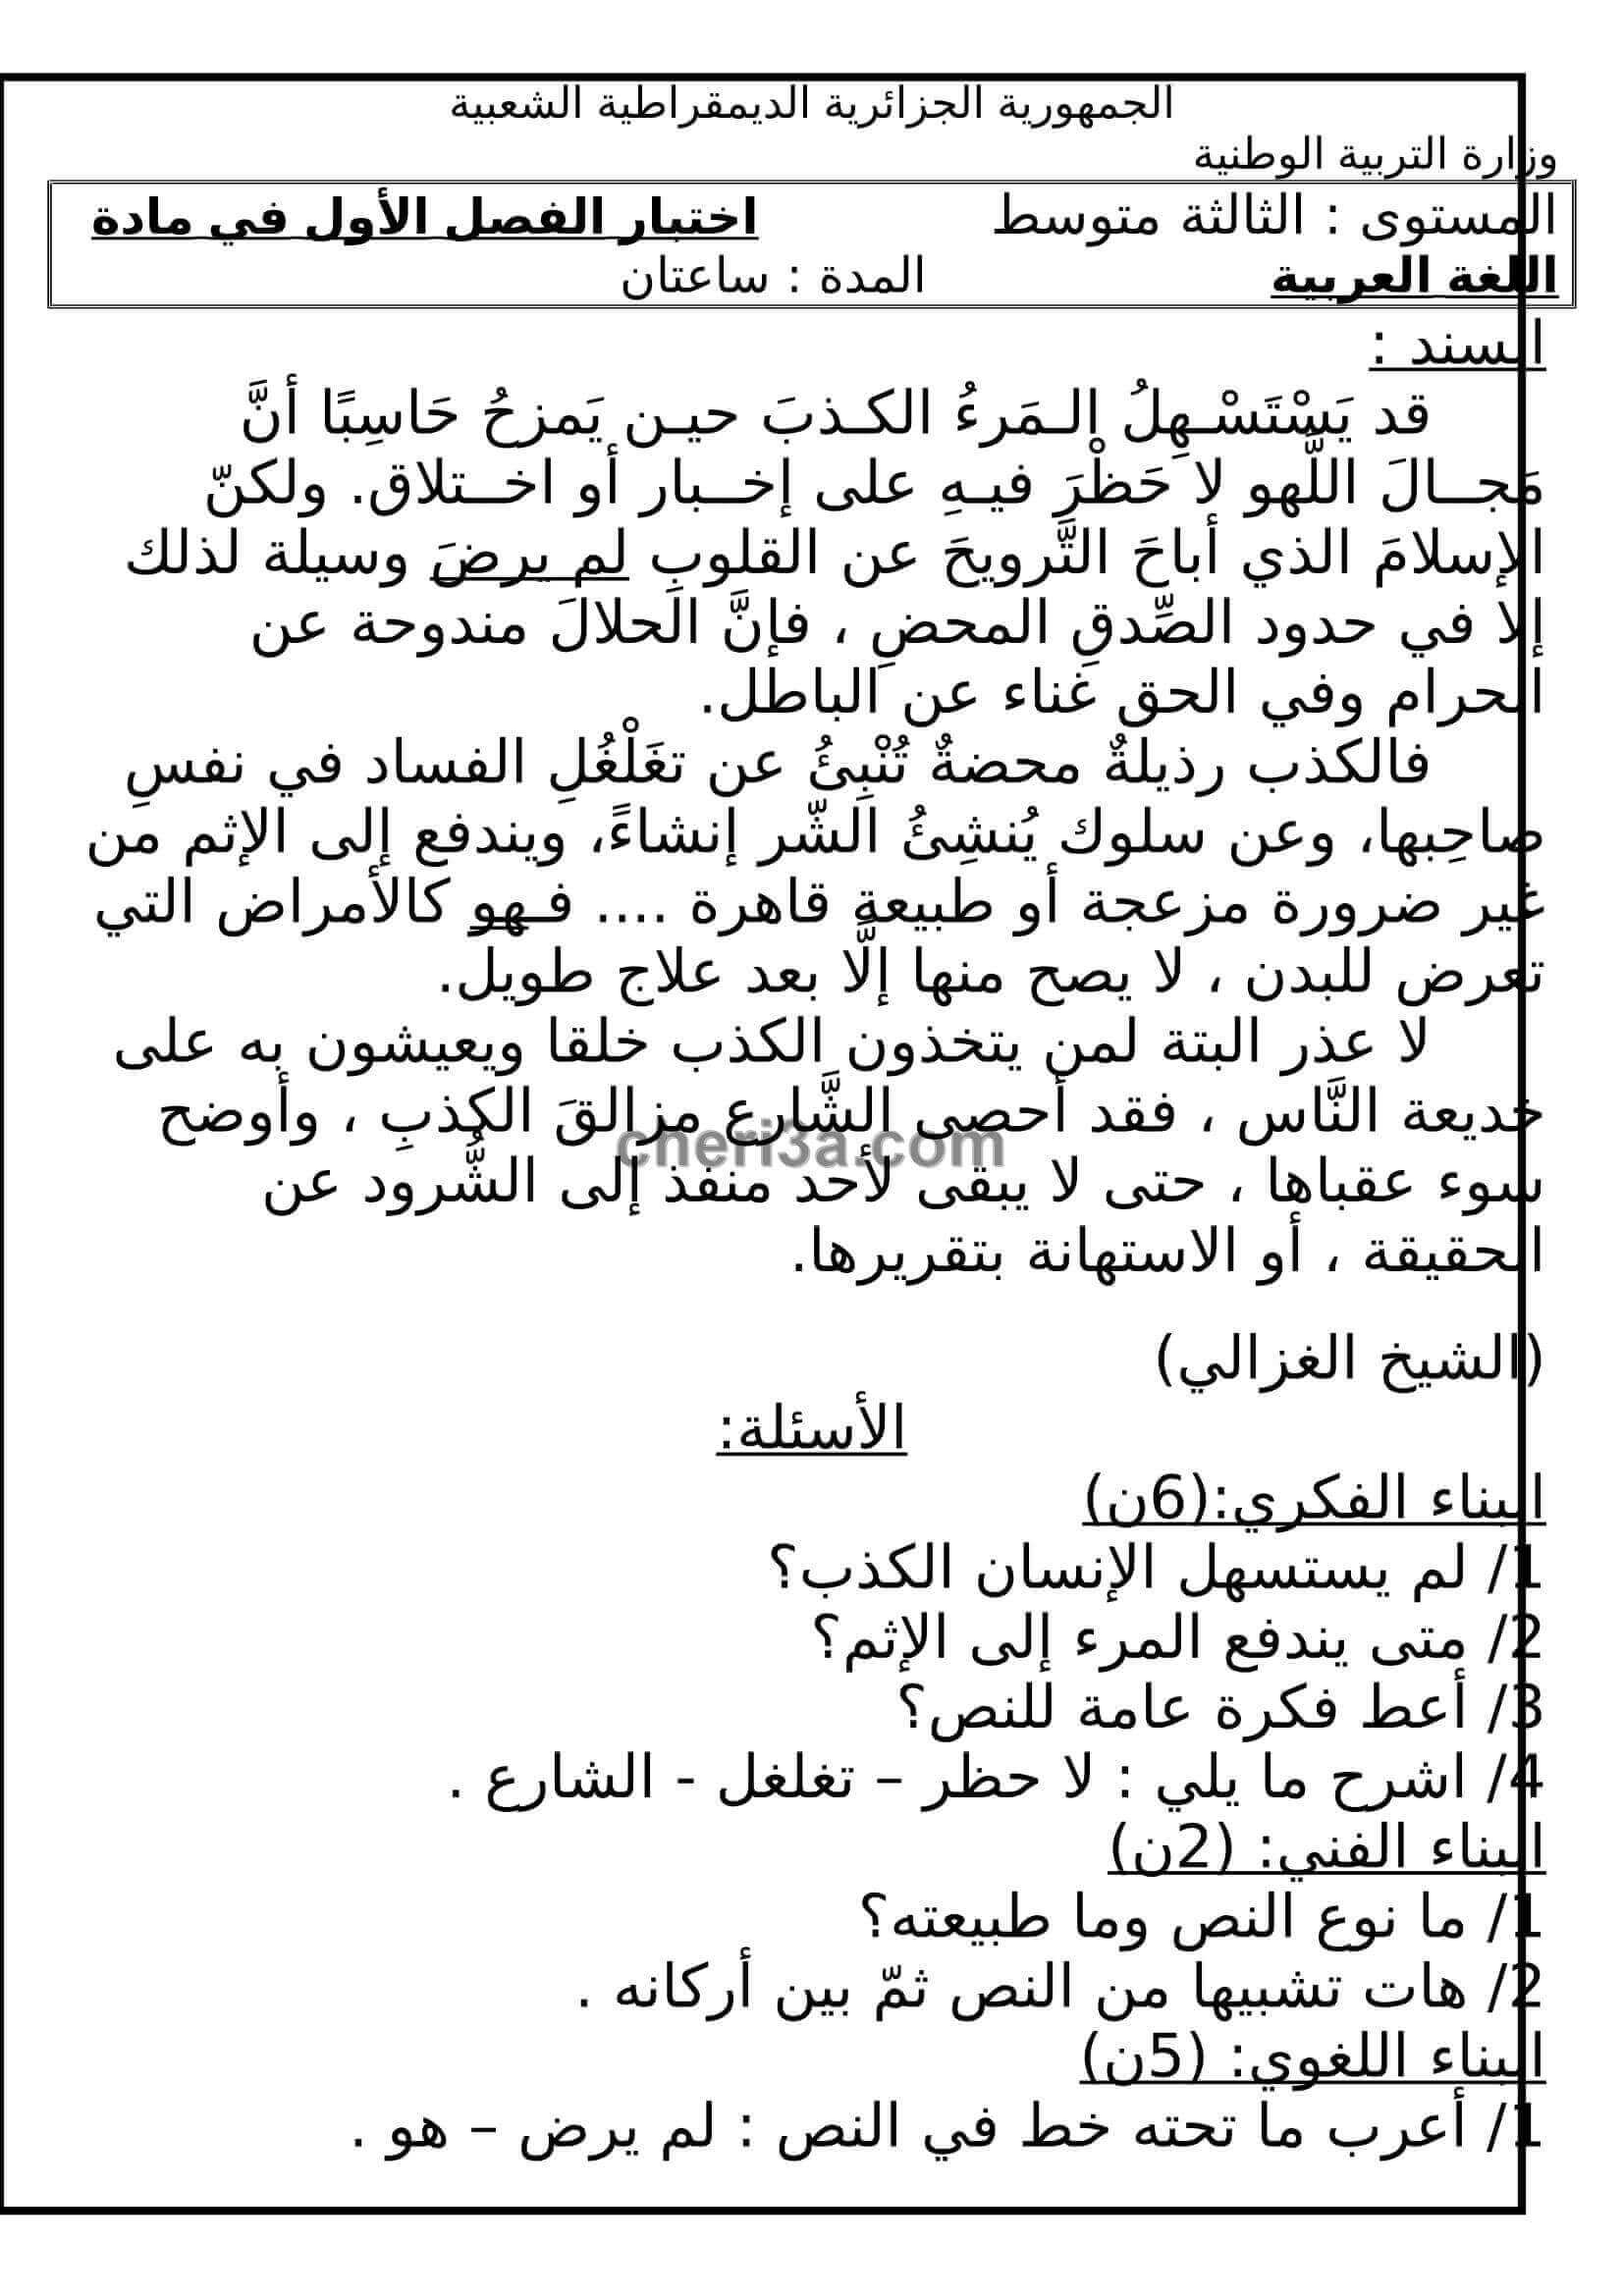 اختبار الفصل الاول للسنة الثالثة متوسط في اللغة العربية النموذج 3 اختبار الفصل الاول للسنة الثالثة متوسط